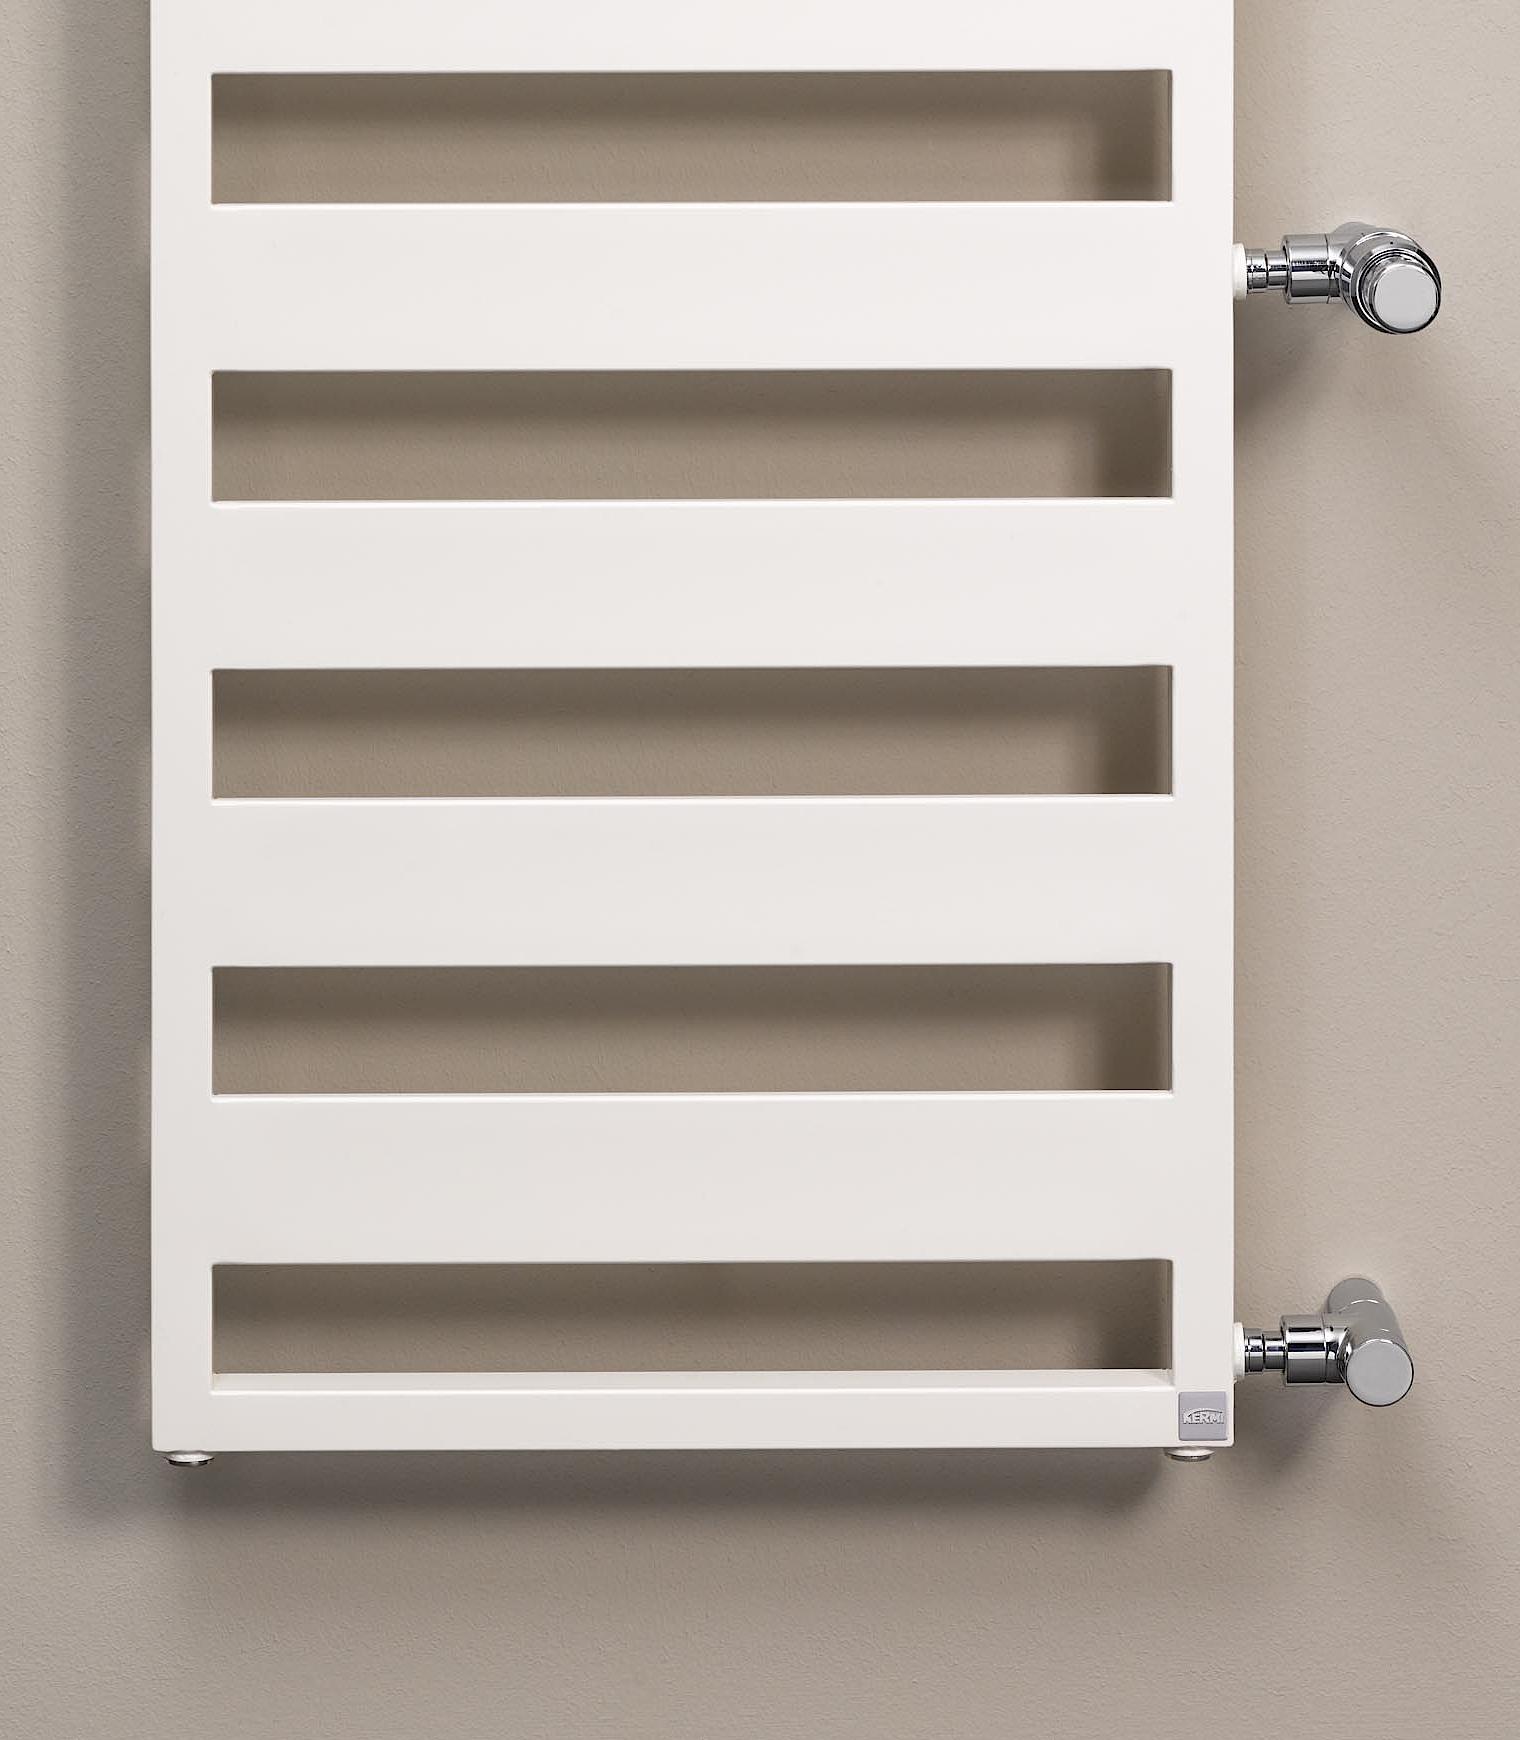 Il radiatore da bagno e di design Kermi Casteo offre una soluzione sostitutiva razionale, rapida per la modernizzazione.